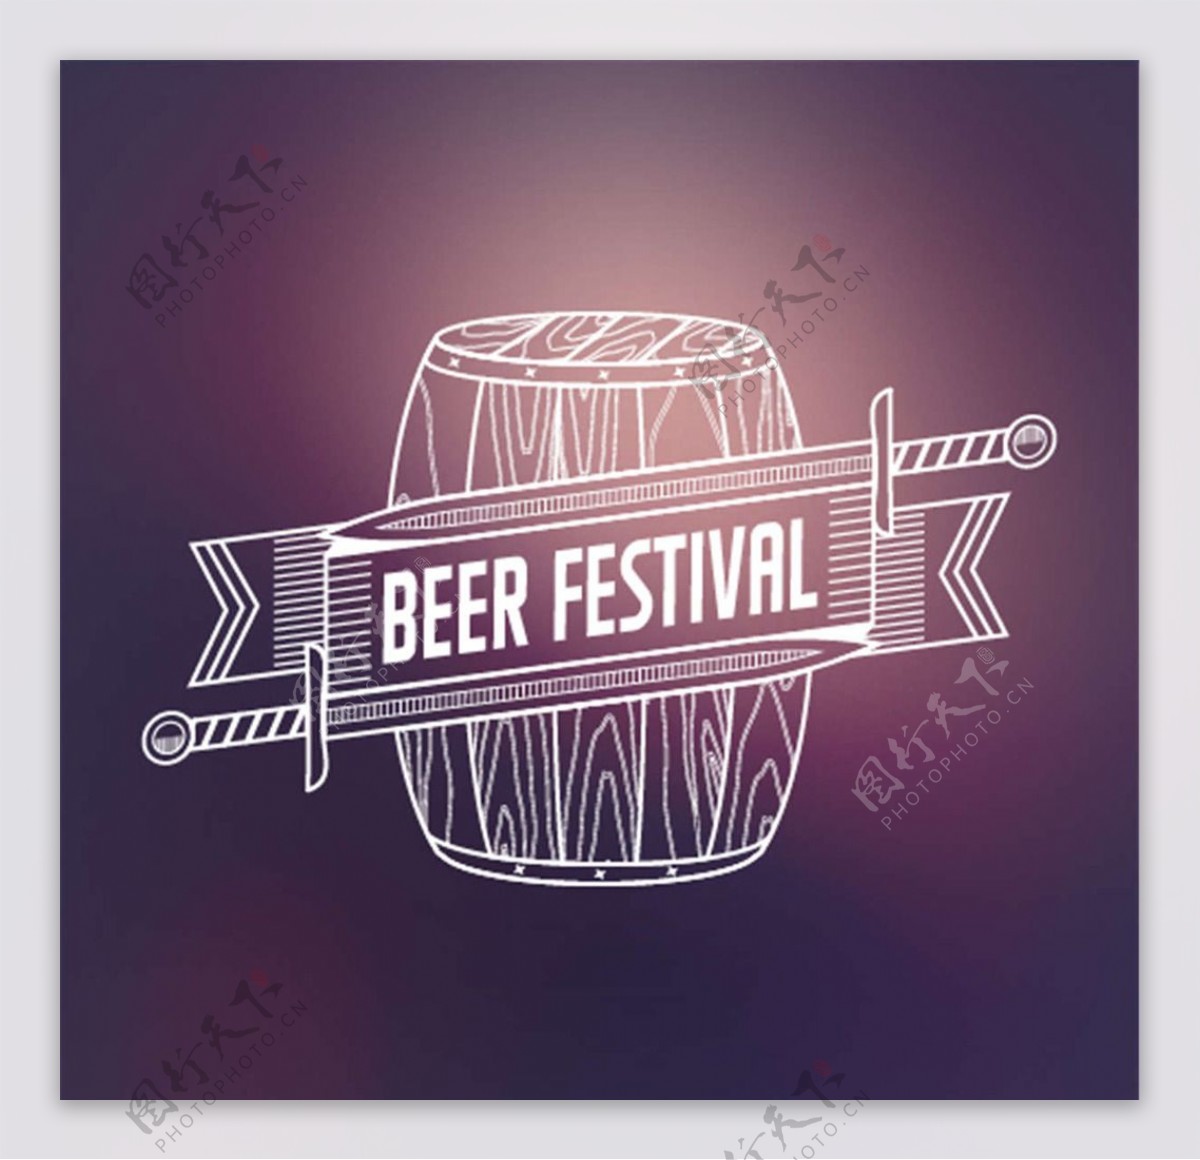 啤酒节设计图片